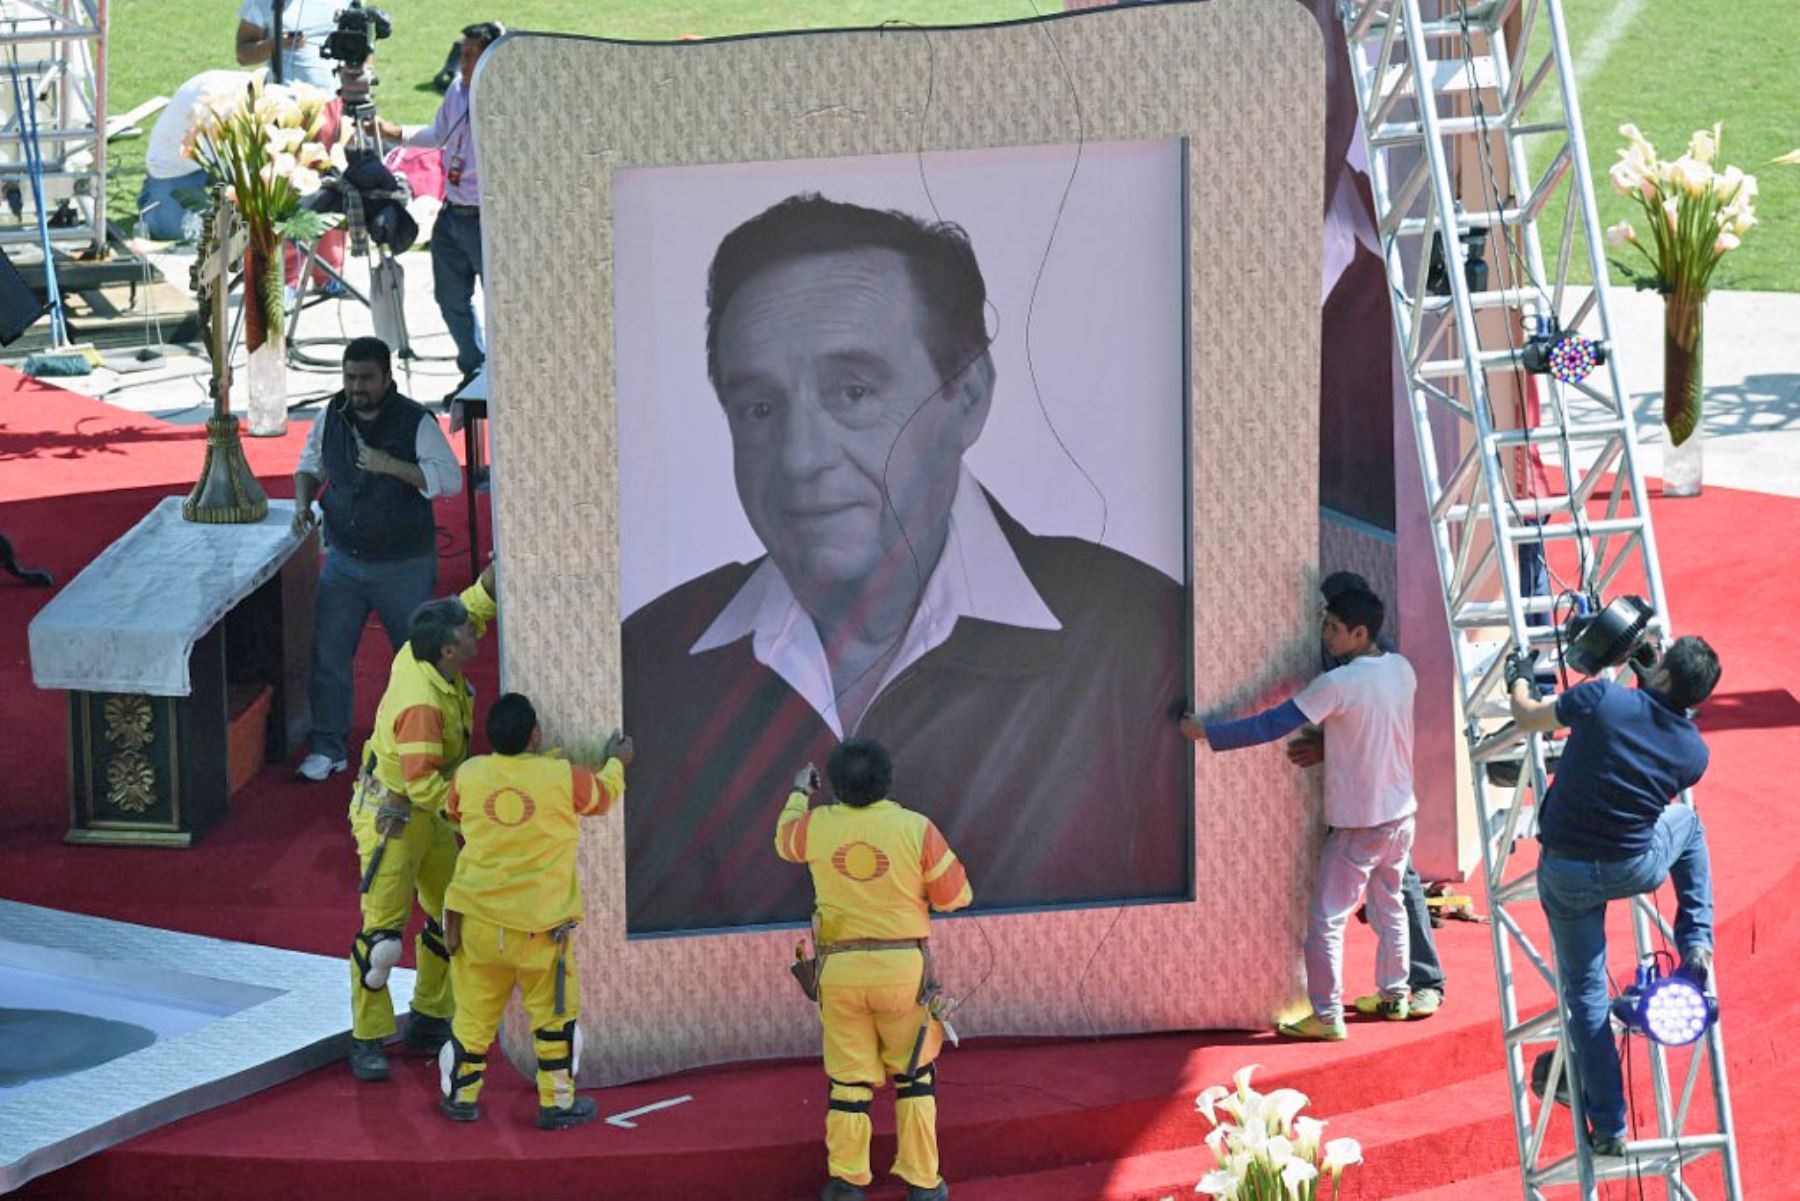 Trabajadores sostienen un retrato del icónico comediante de televisión mexicano Roberto Gómez Bolaños, antes de un homenaje en su honor dos días después de su muerte, el 30 de noviembre de 2014 en el estadio Azteca con capacidad para 105.000 personas en la Ciudad de México. Foto: AFP